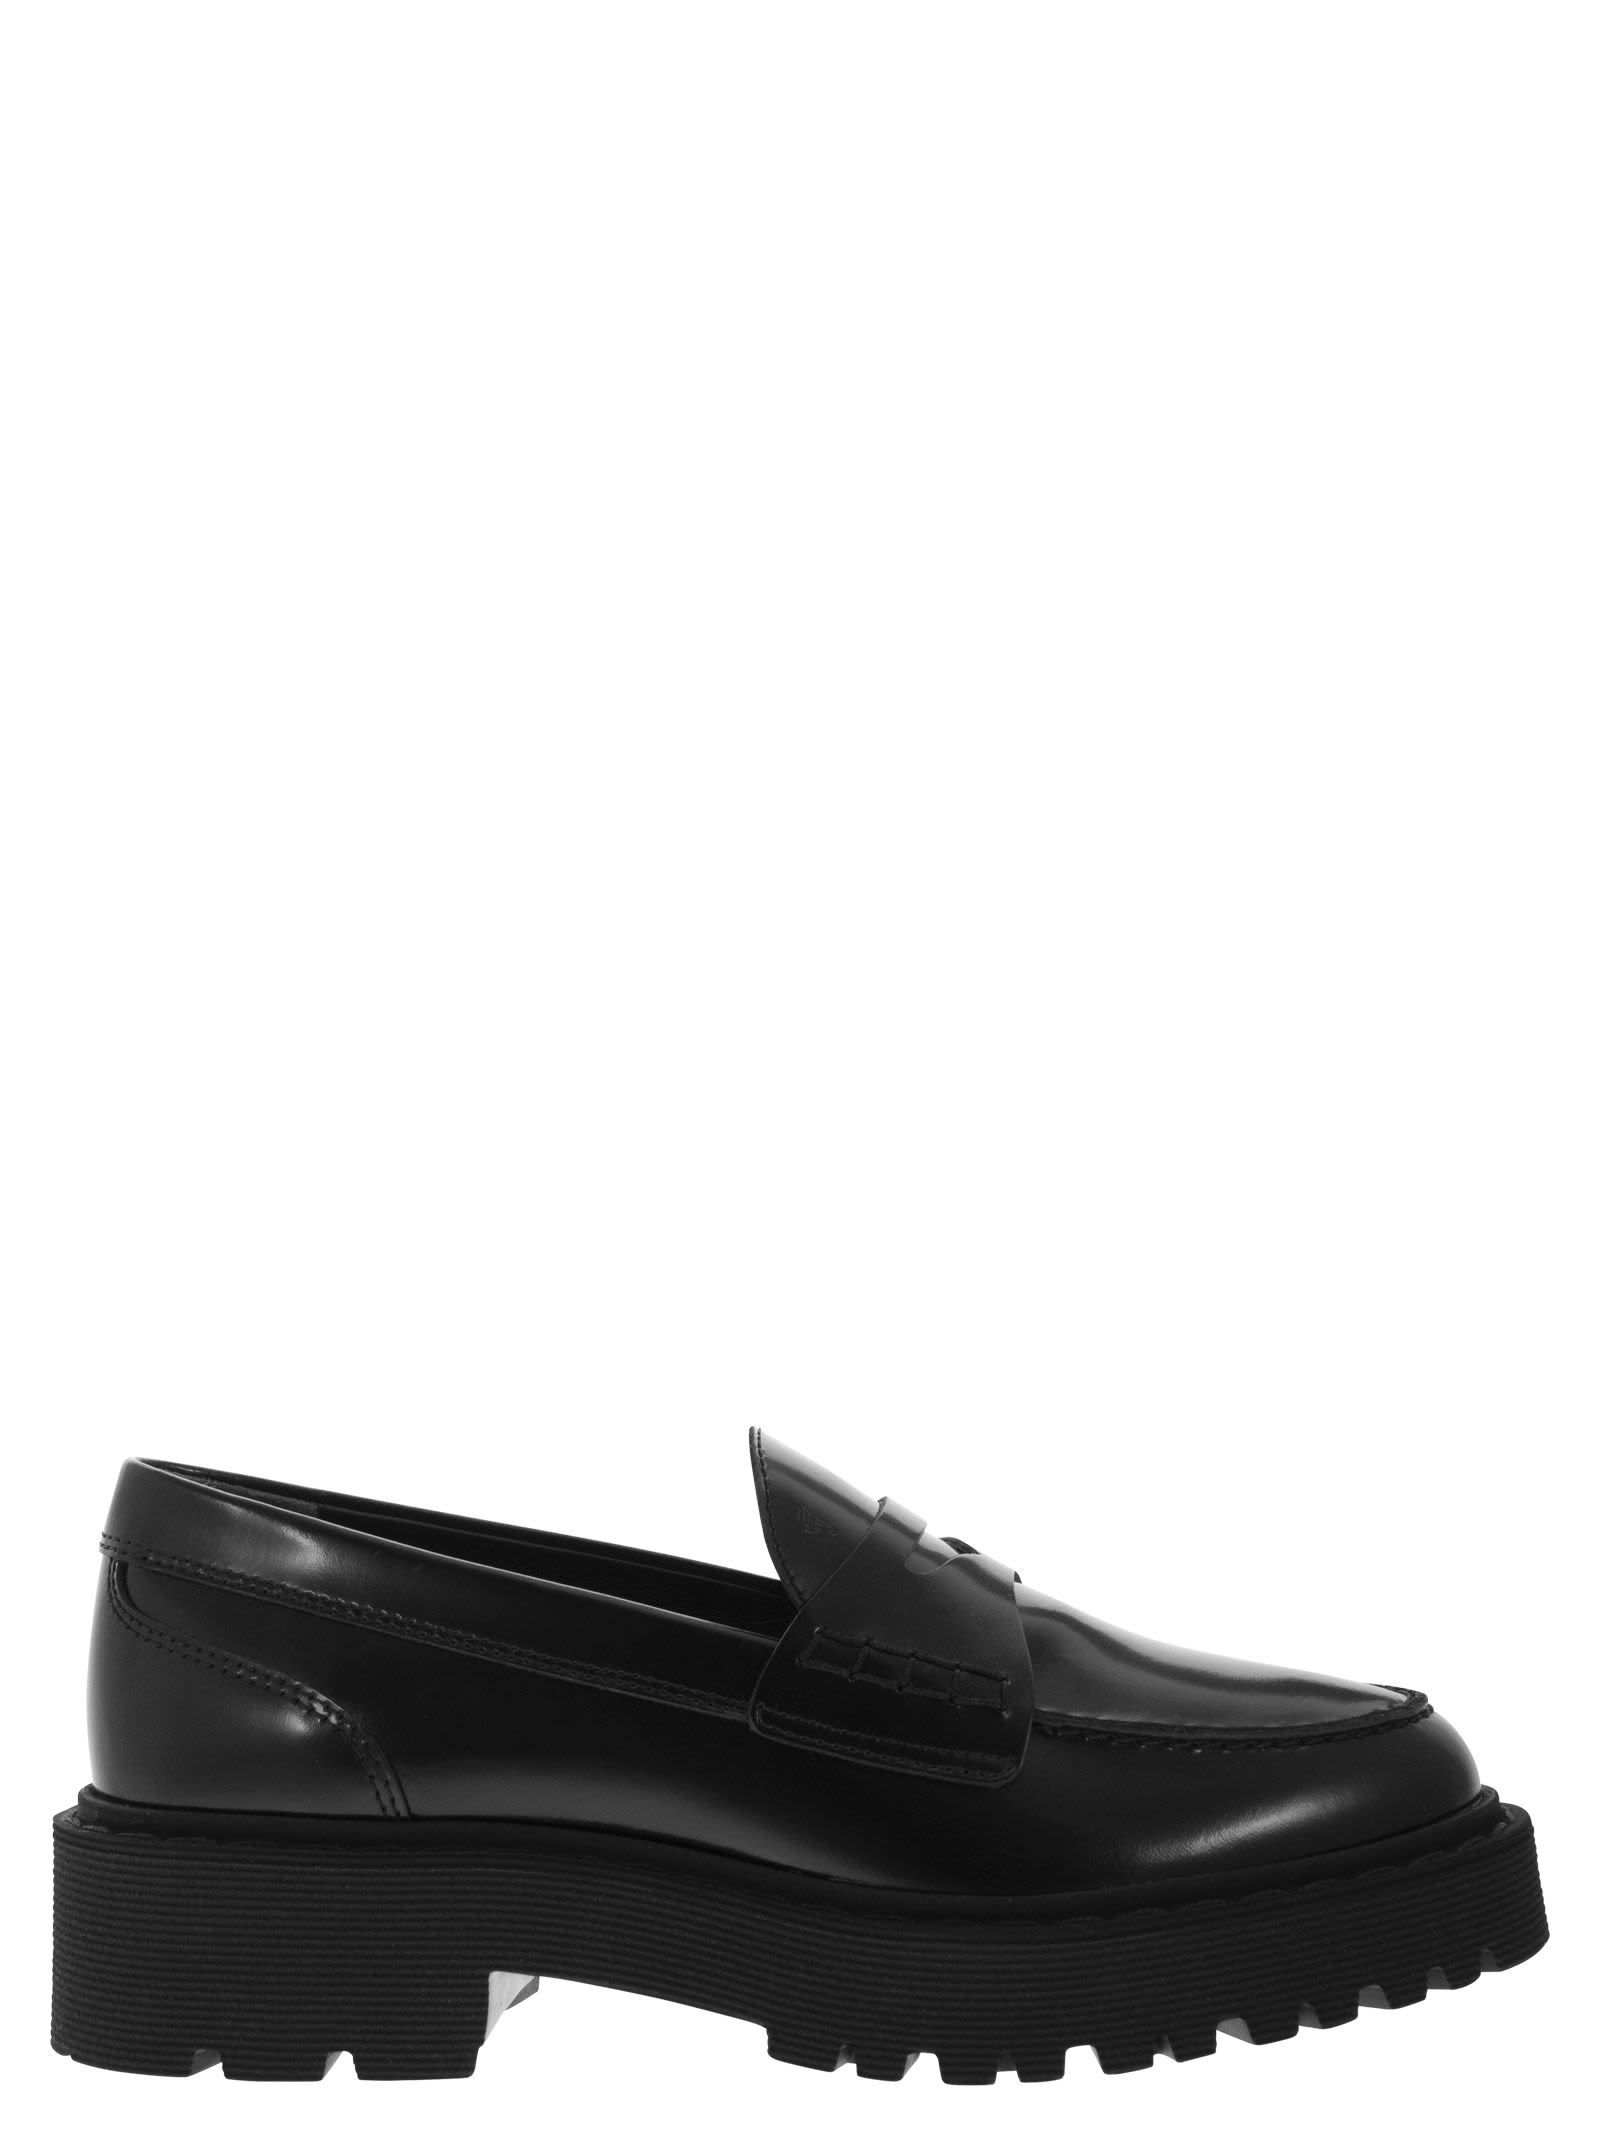 Hogan H543 - Leather Loafer